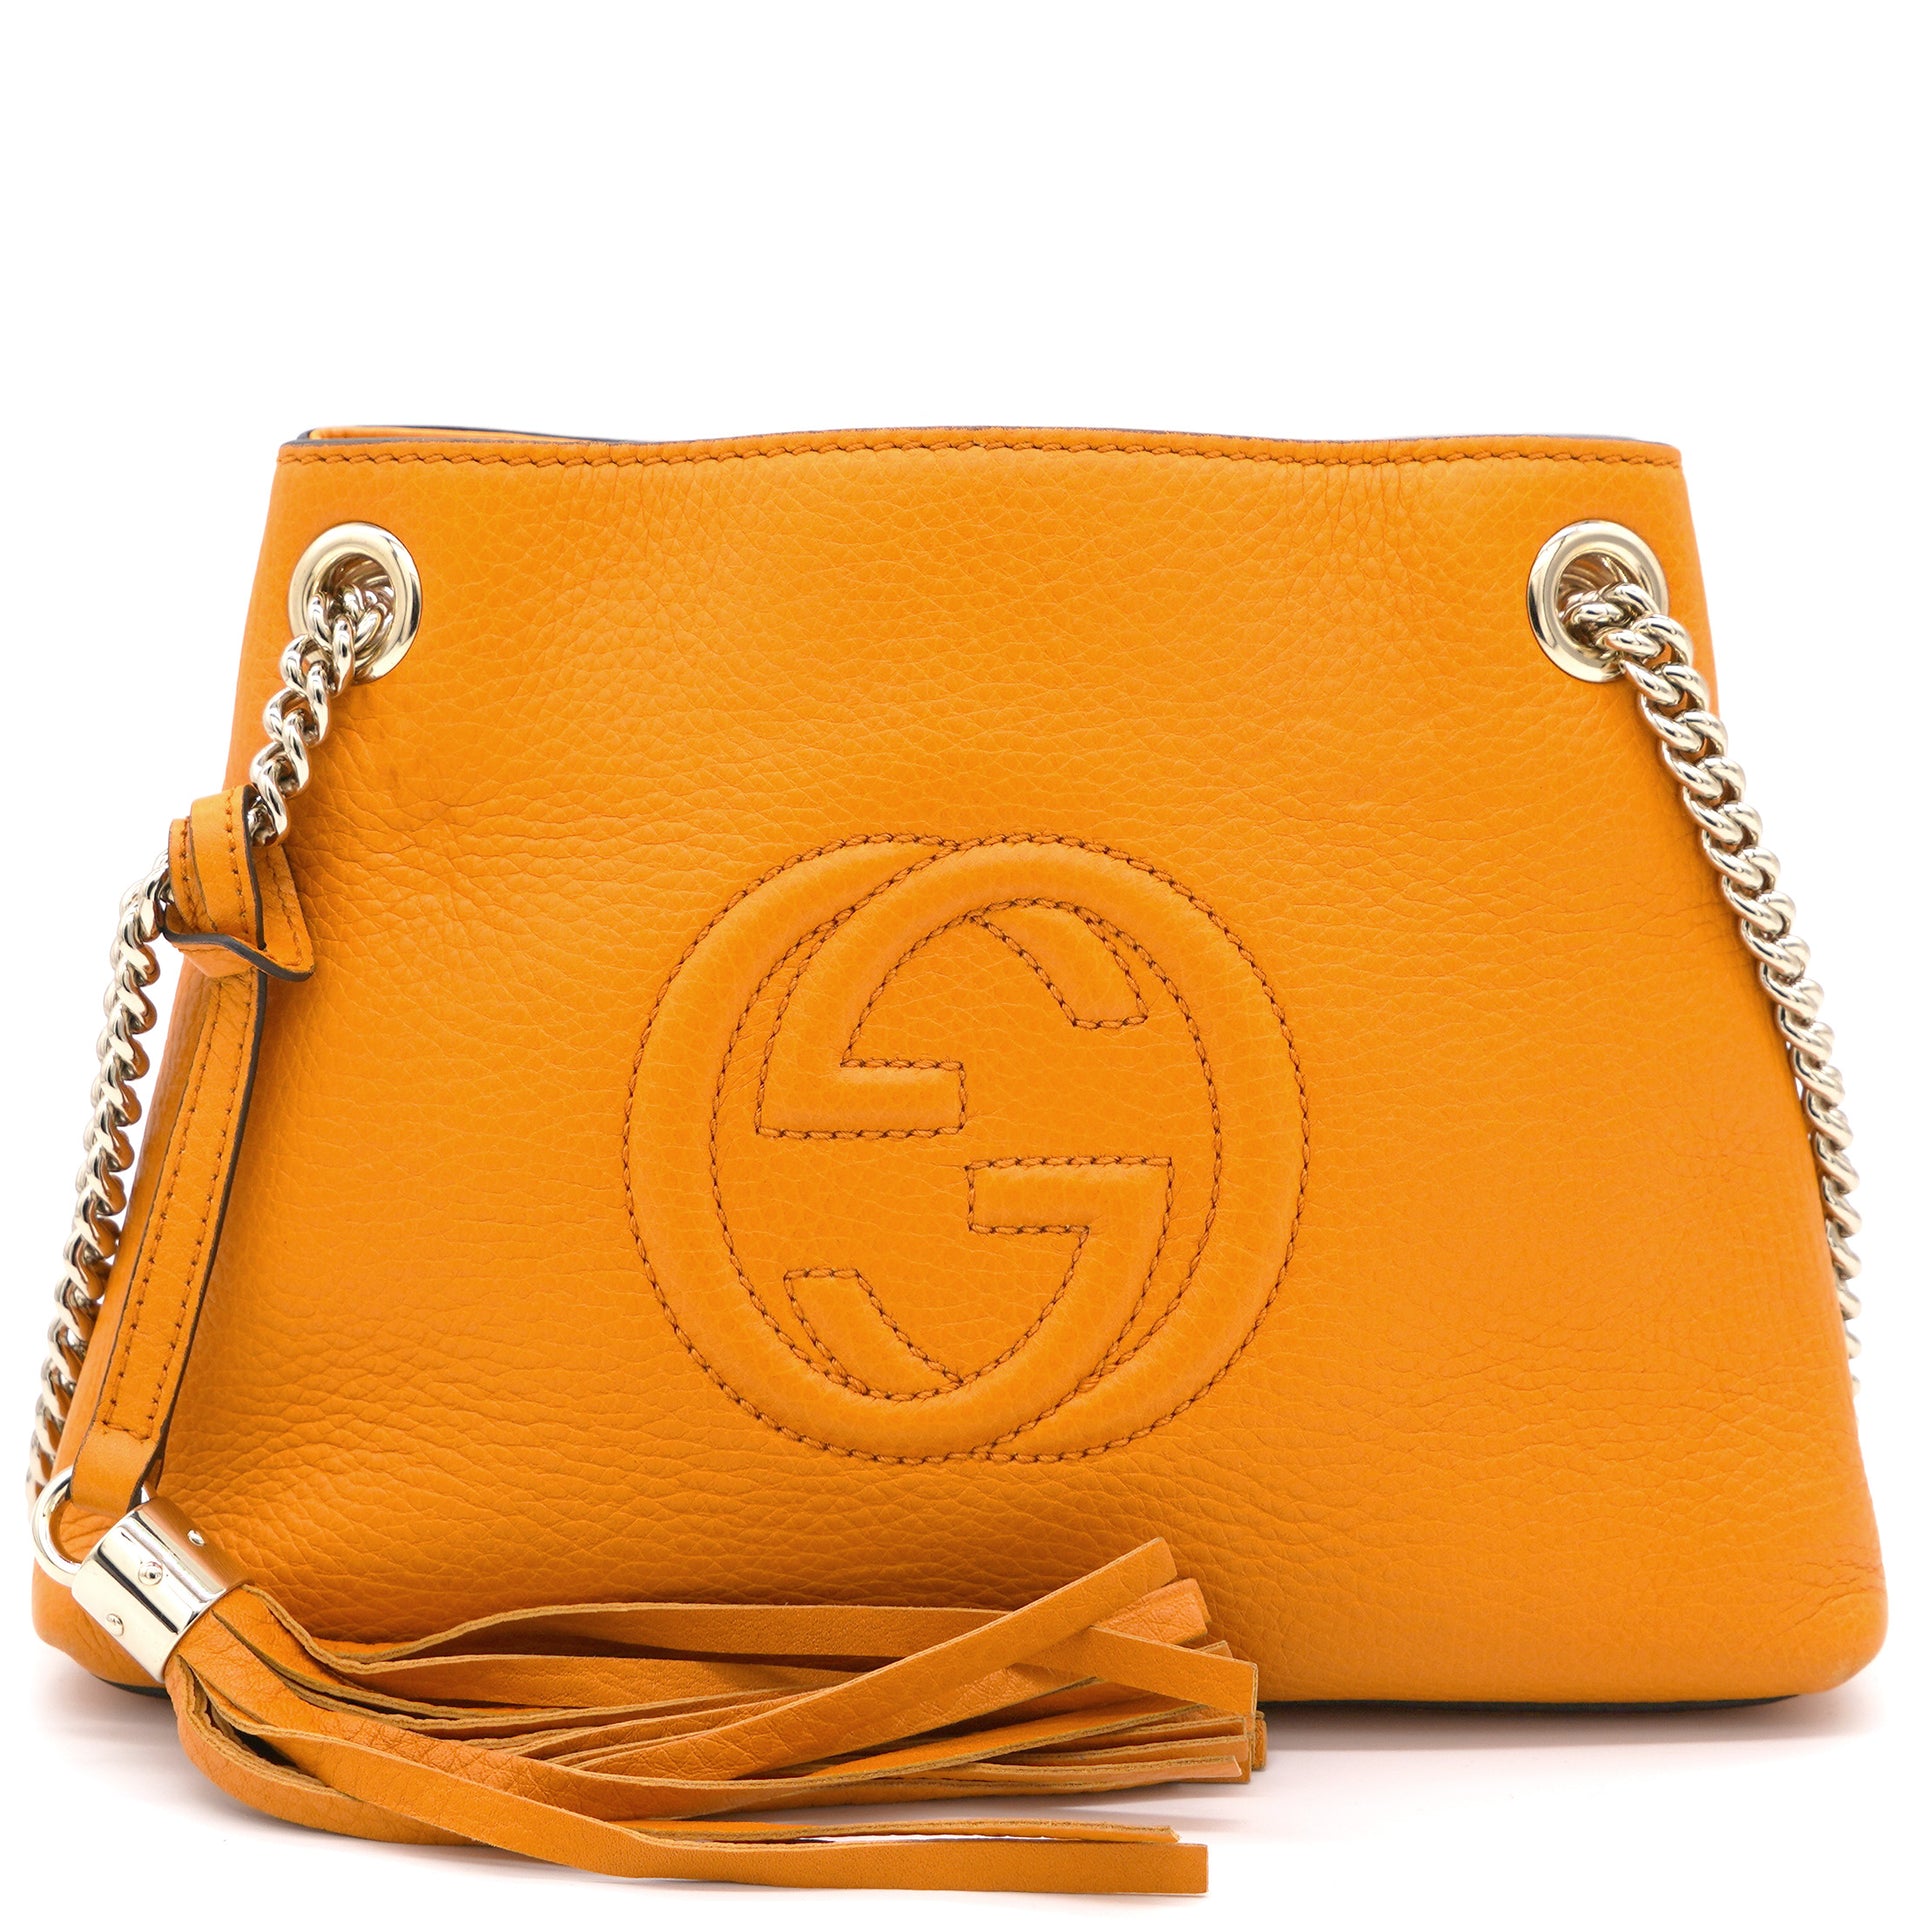 Gucci GG Burnt Orange Two-Tone Leather Shoulder Bag 648934 - Walmart.com